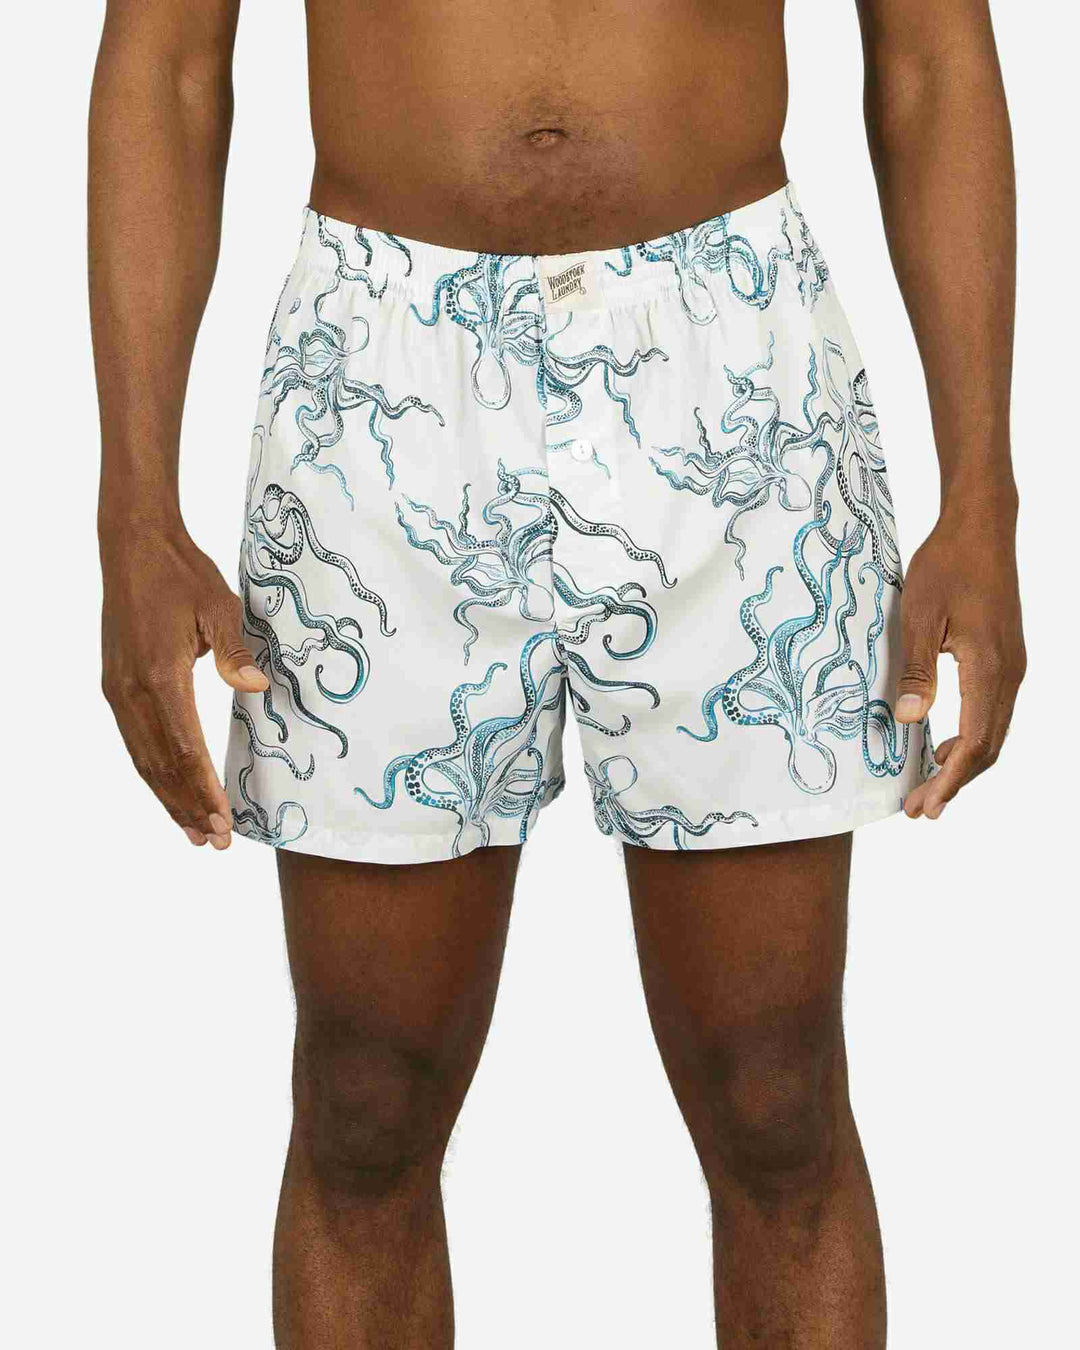 Mens boxer shorts - octopus indigo